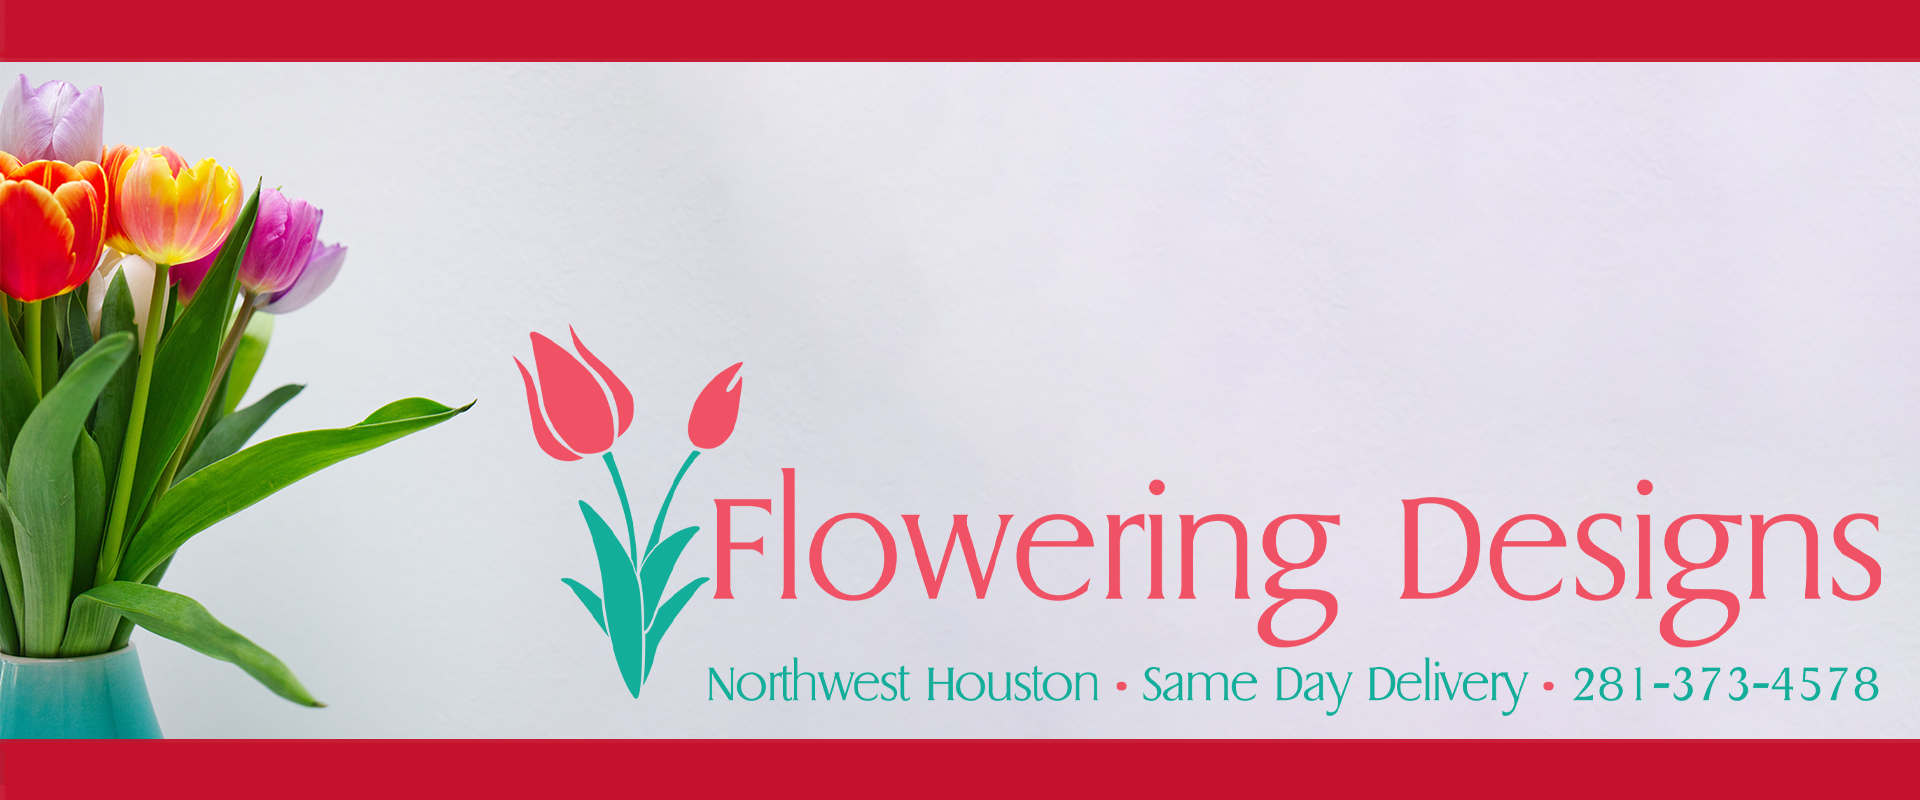 Flowering Designs Florist